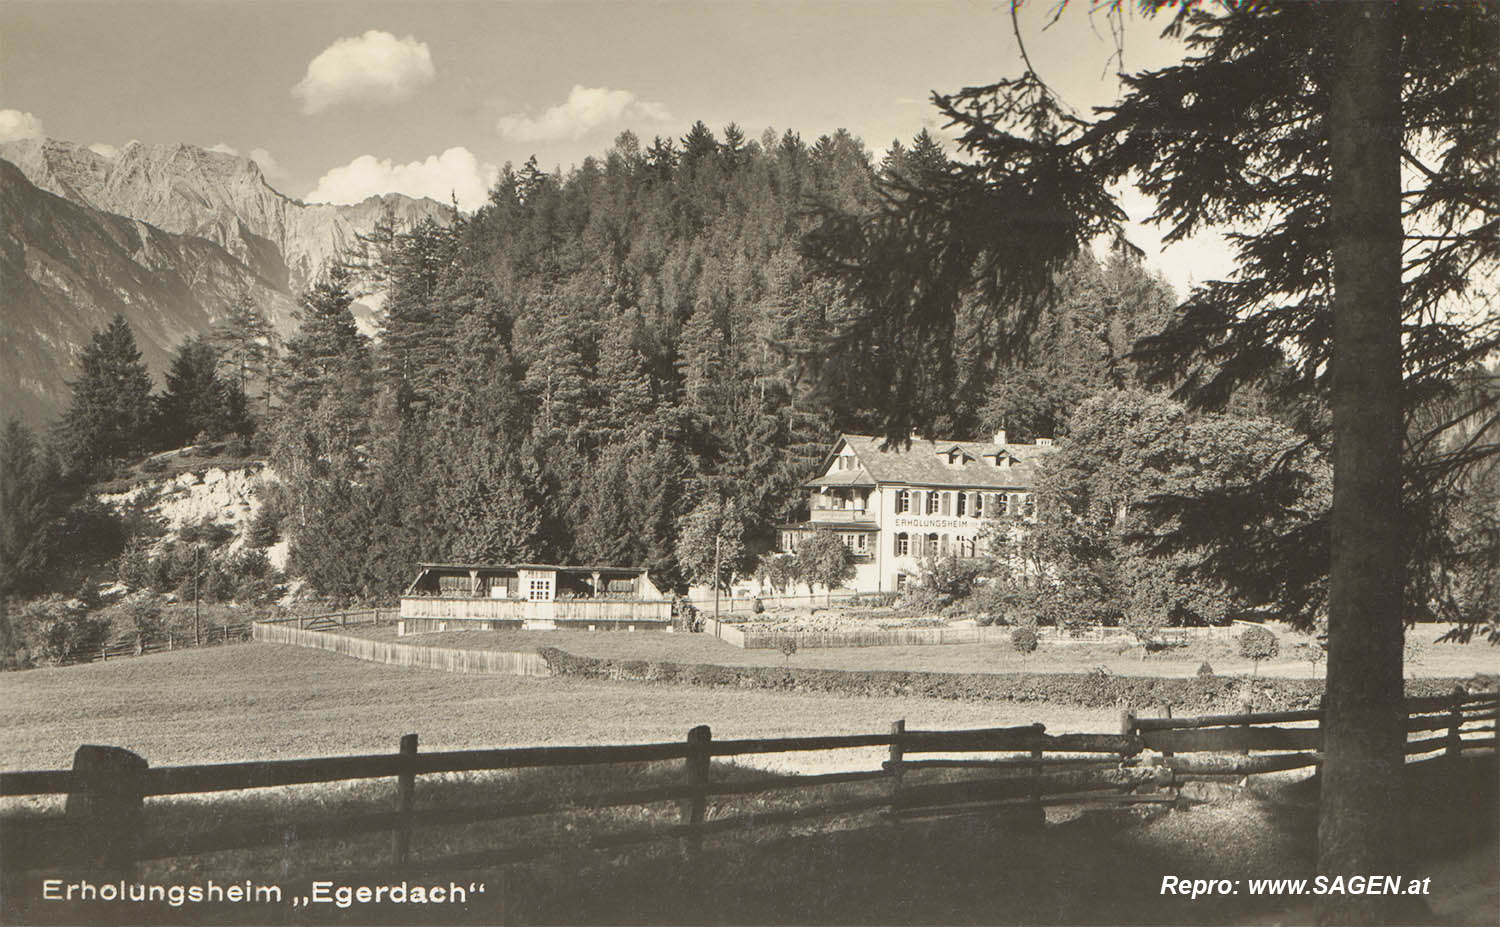 Erholungsheim "Egerdach", Innsbruck